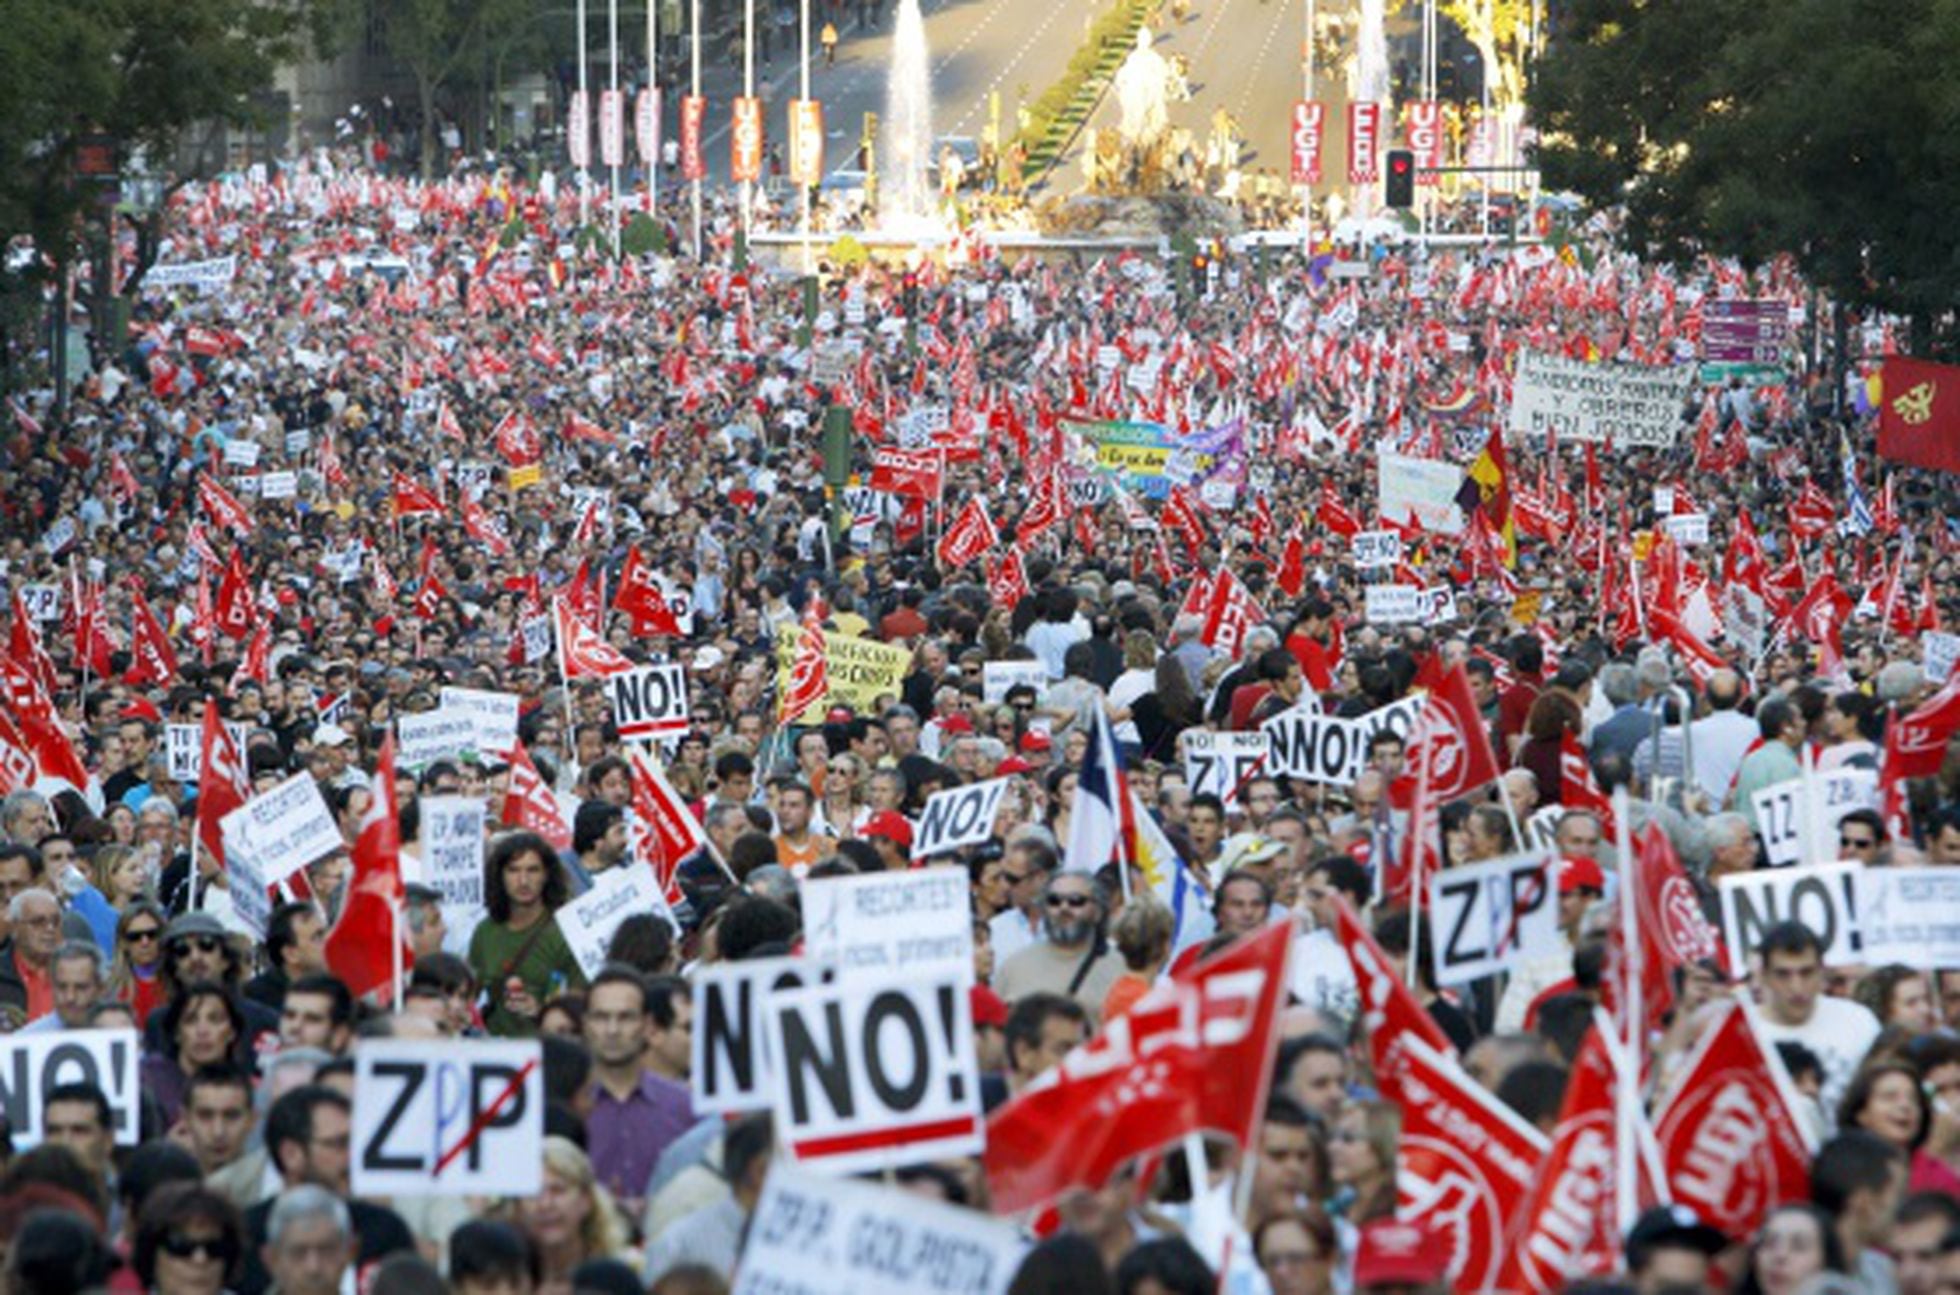 Las Siete Grandes Protestas Sindicales Economía El PaÍs 4861